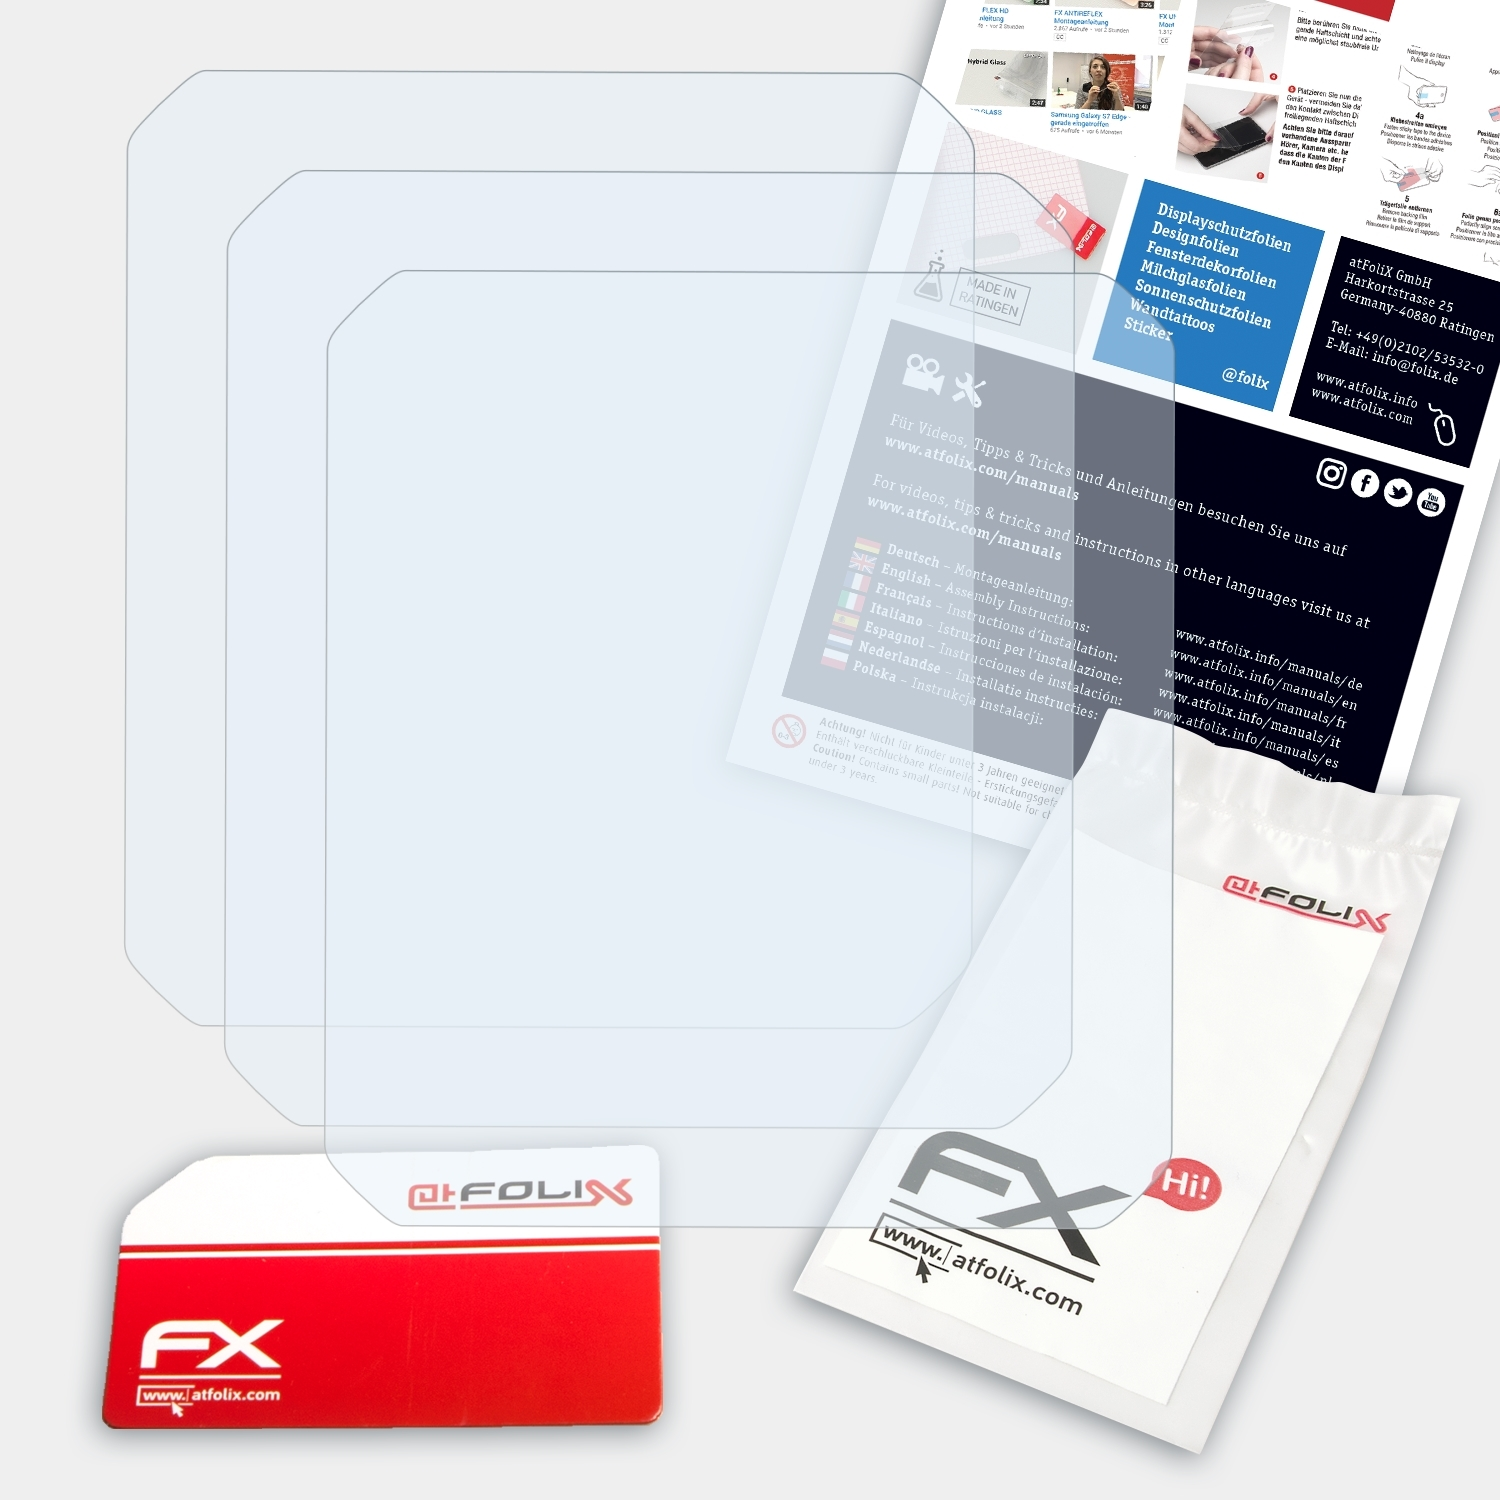 FX-Clear Garmin 3x ATFOLIX Displayschutz(für Epix)